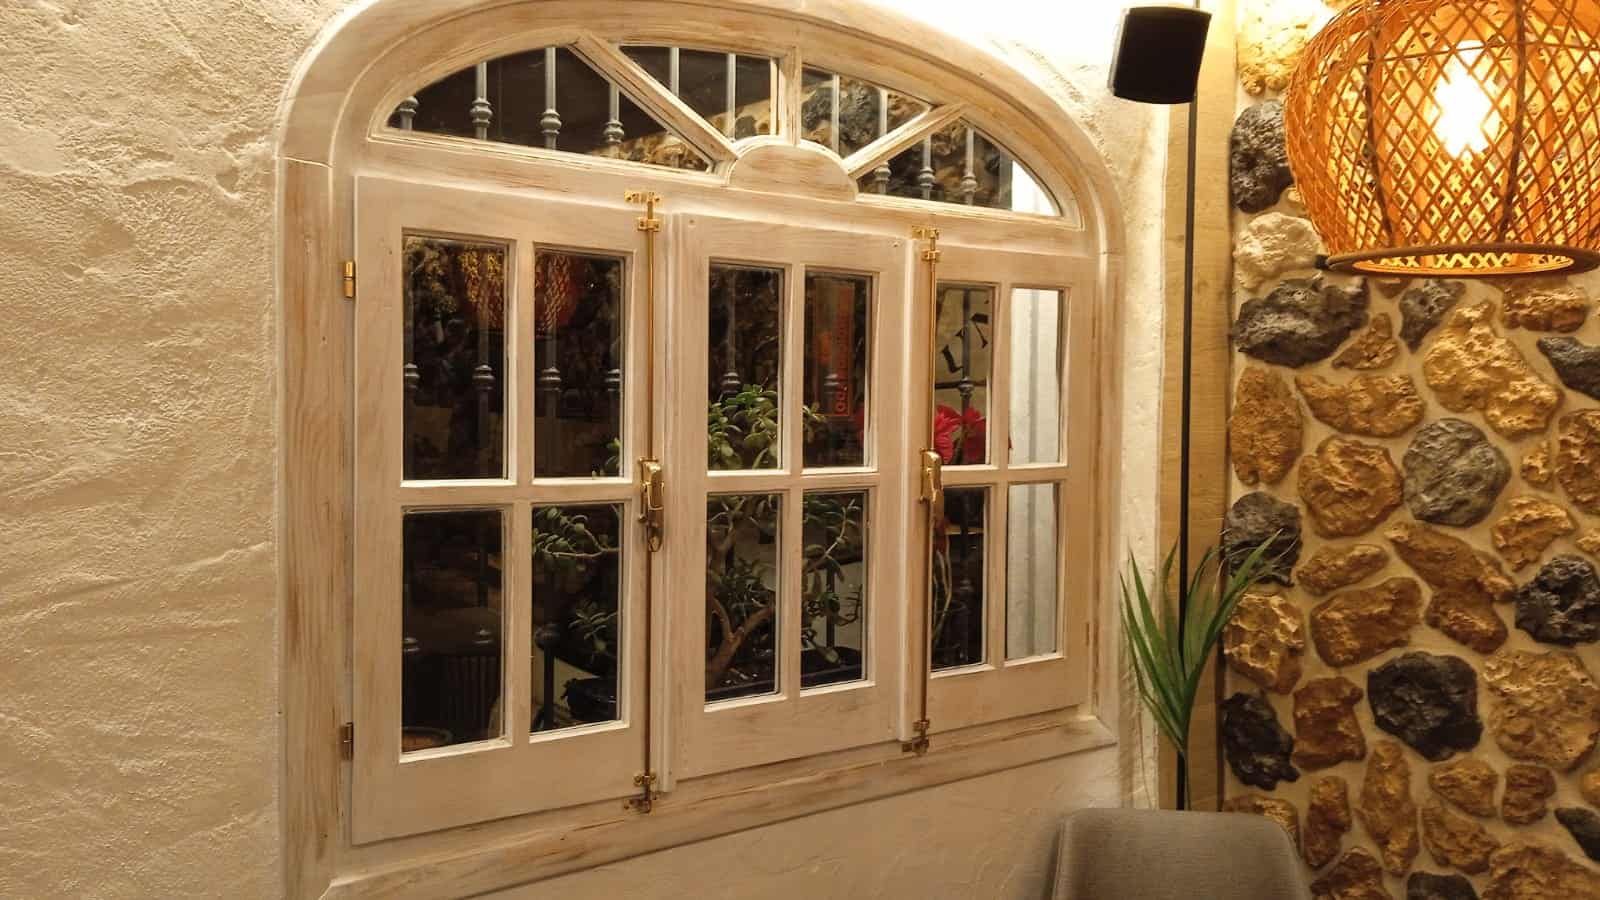 Trabajos carpintero: Restauración de ventanas en restaurante